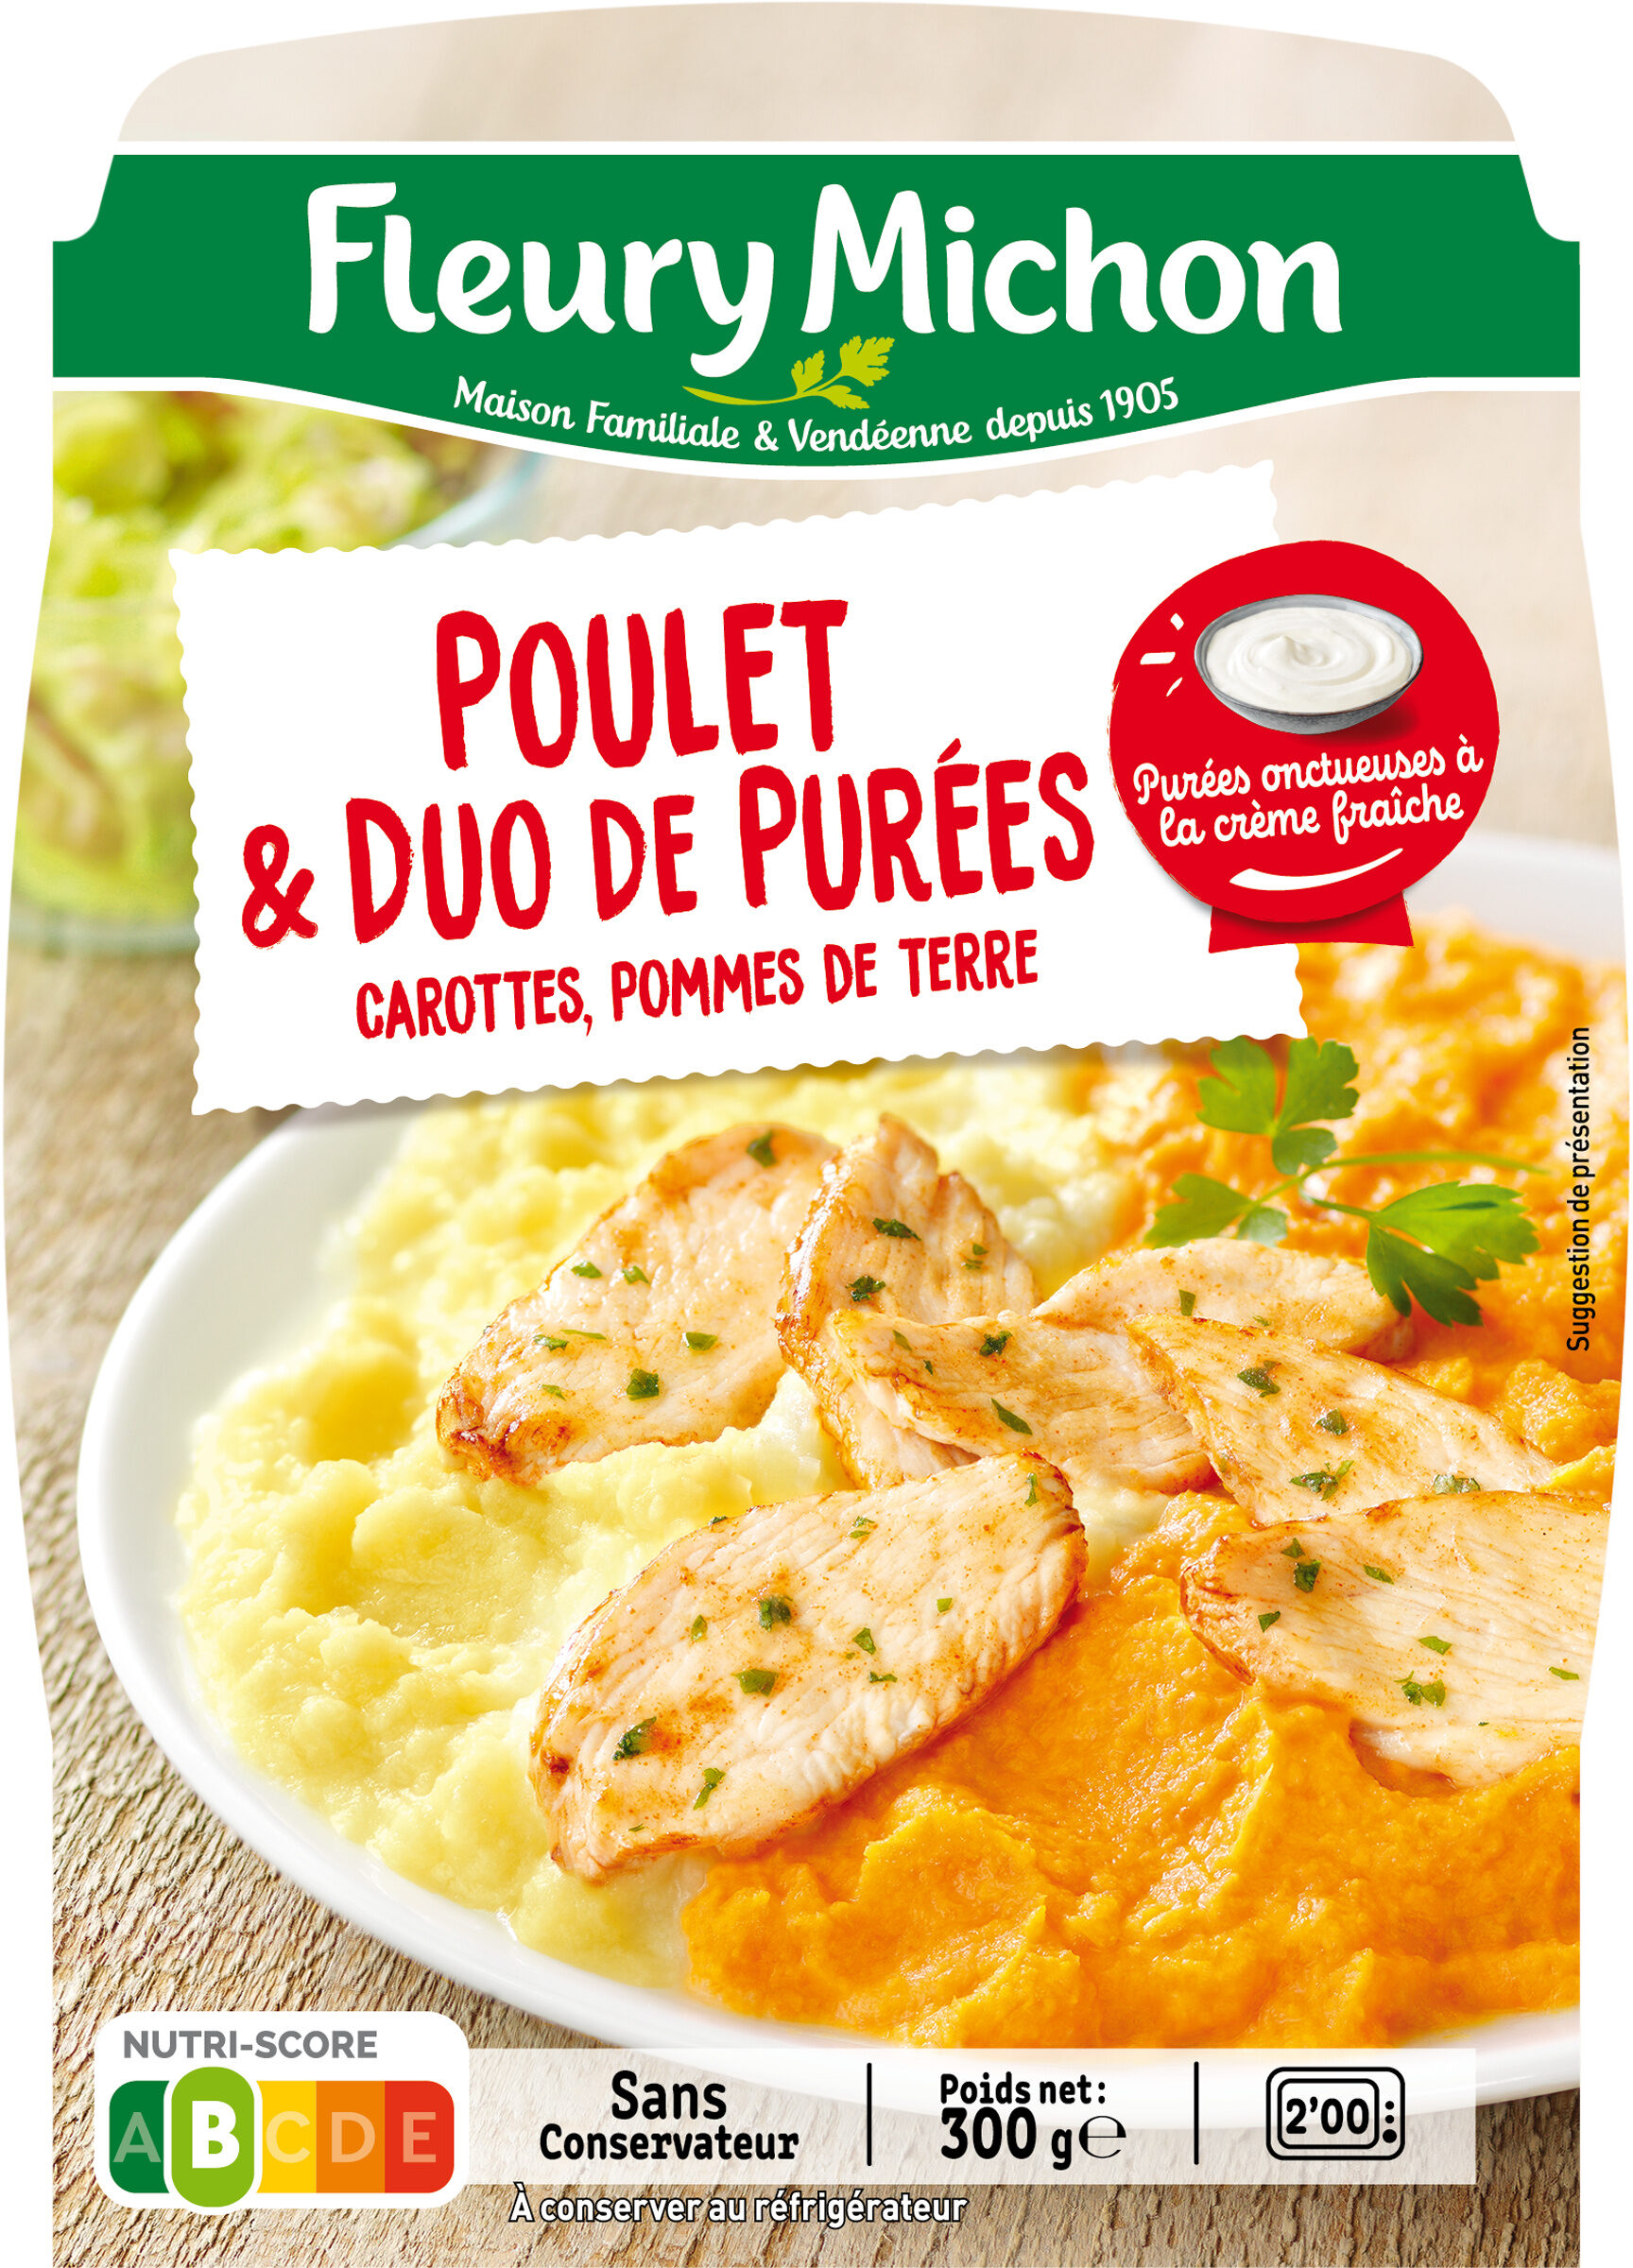 Poulet & duo de purées, carottes, pommes de terre - Produkt - fr